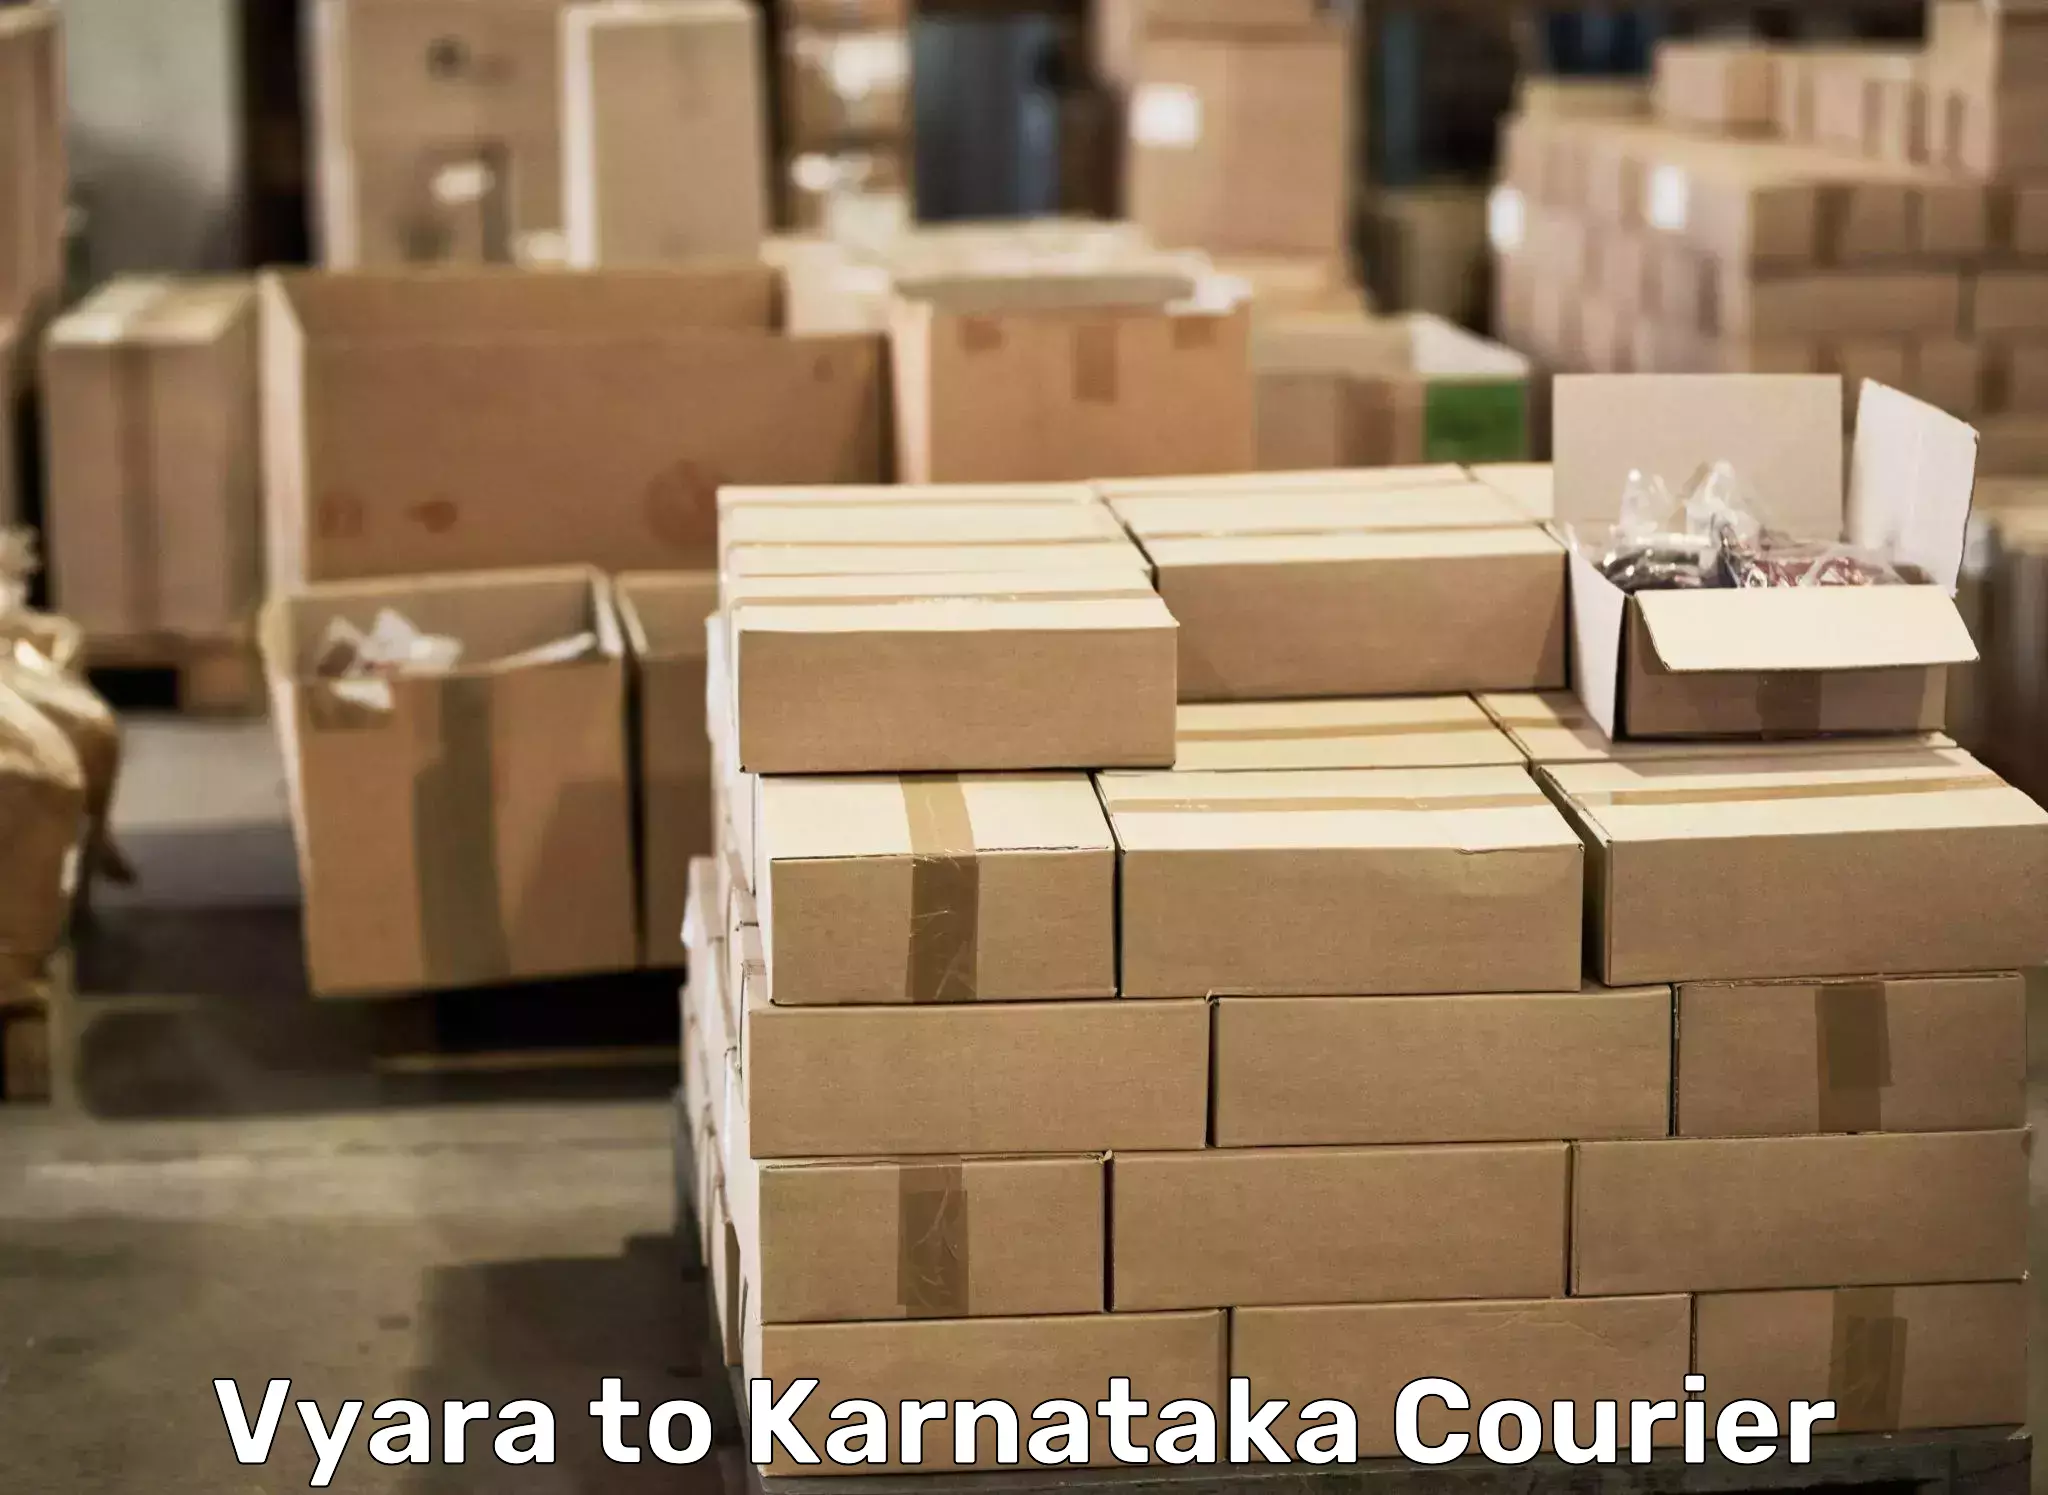 Moving and storage services Vyara to Yelburga